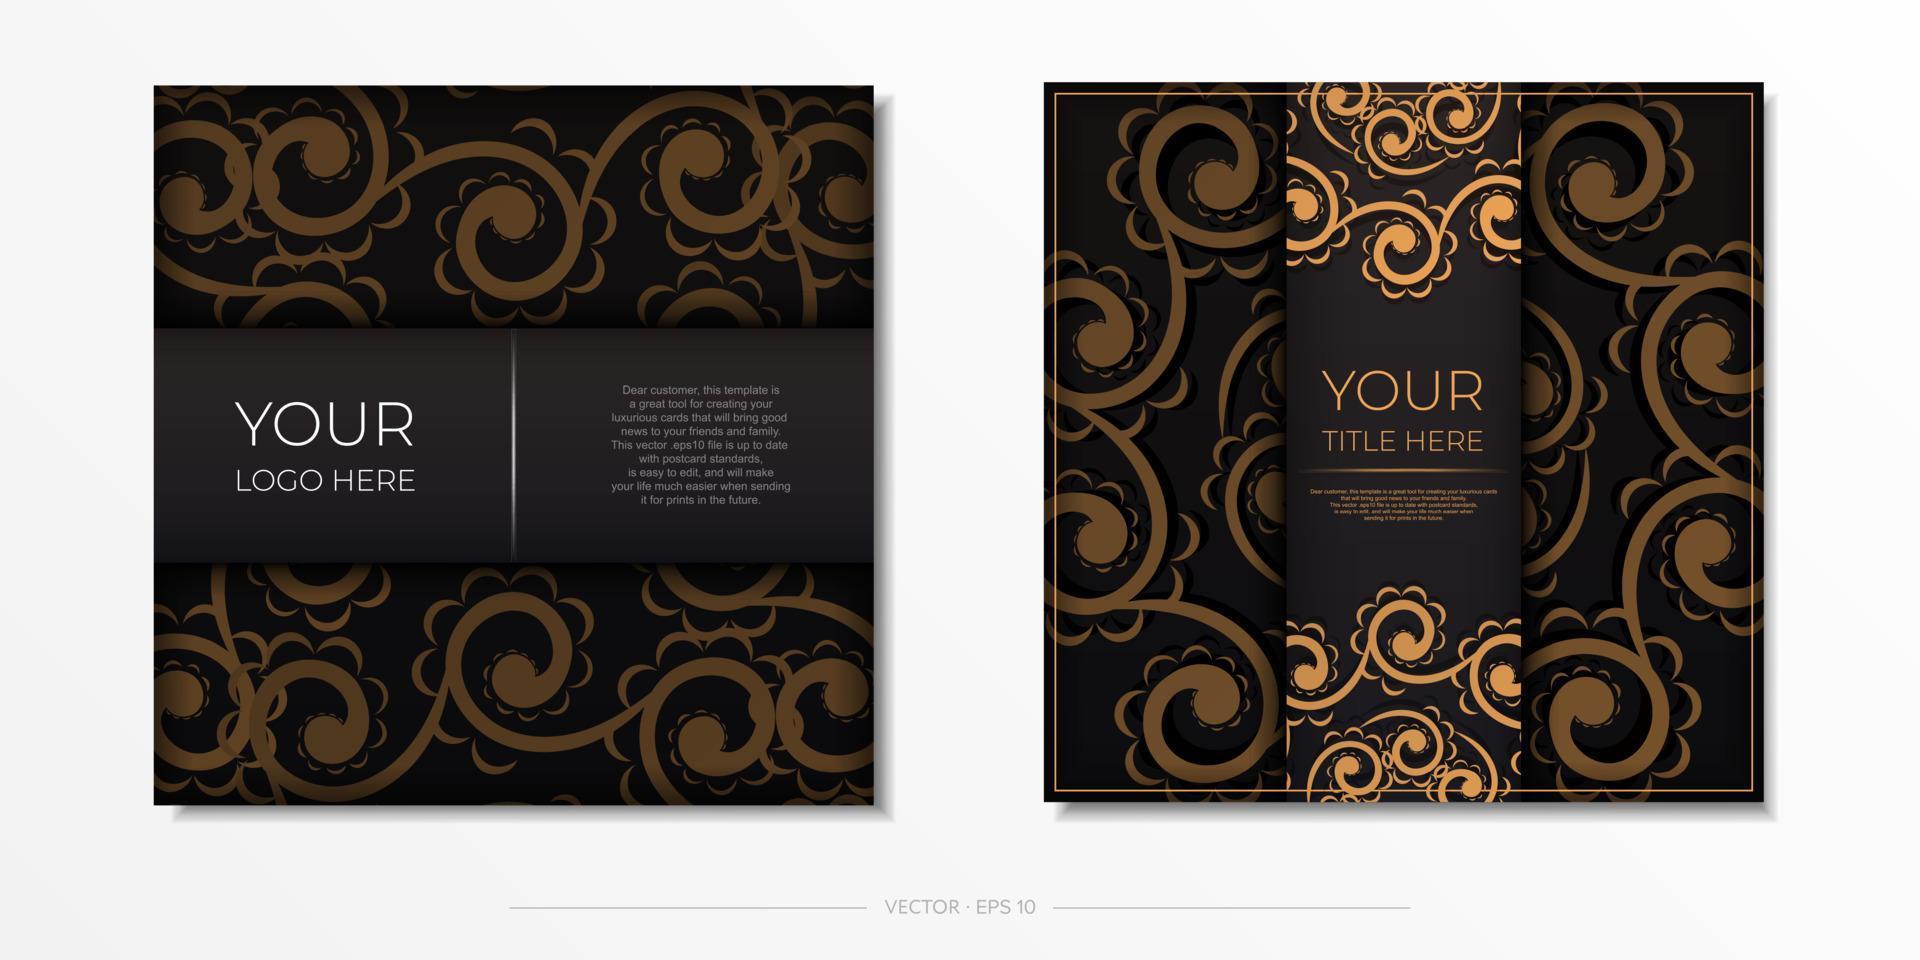 plein ansichtkaarten in zwart met Indisch ornamenten. vector ontwerp van uitnodiging kaart met mandala patronen.